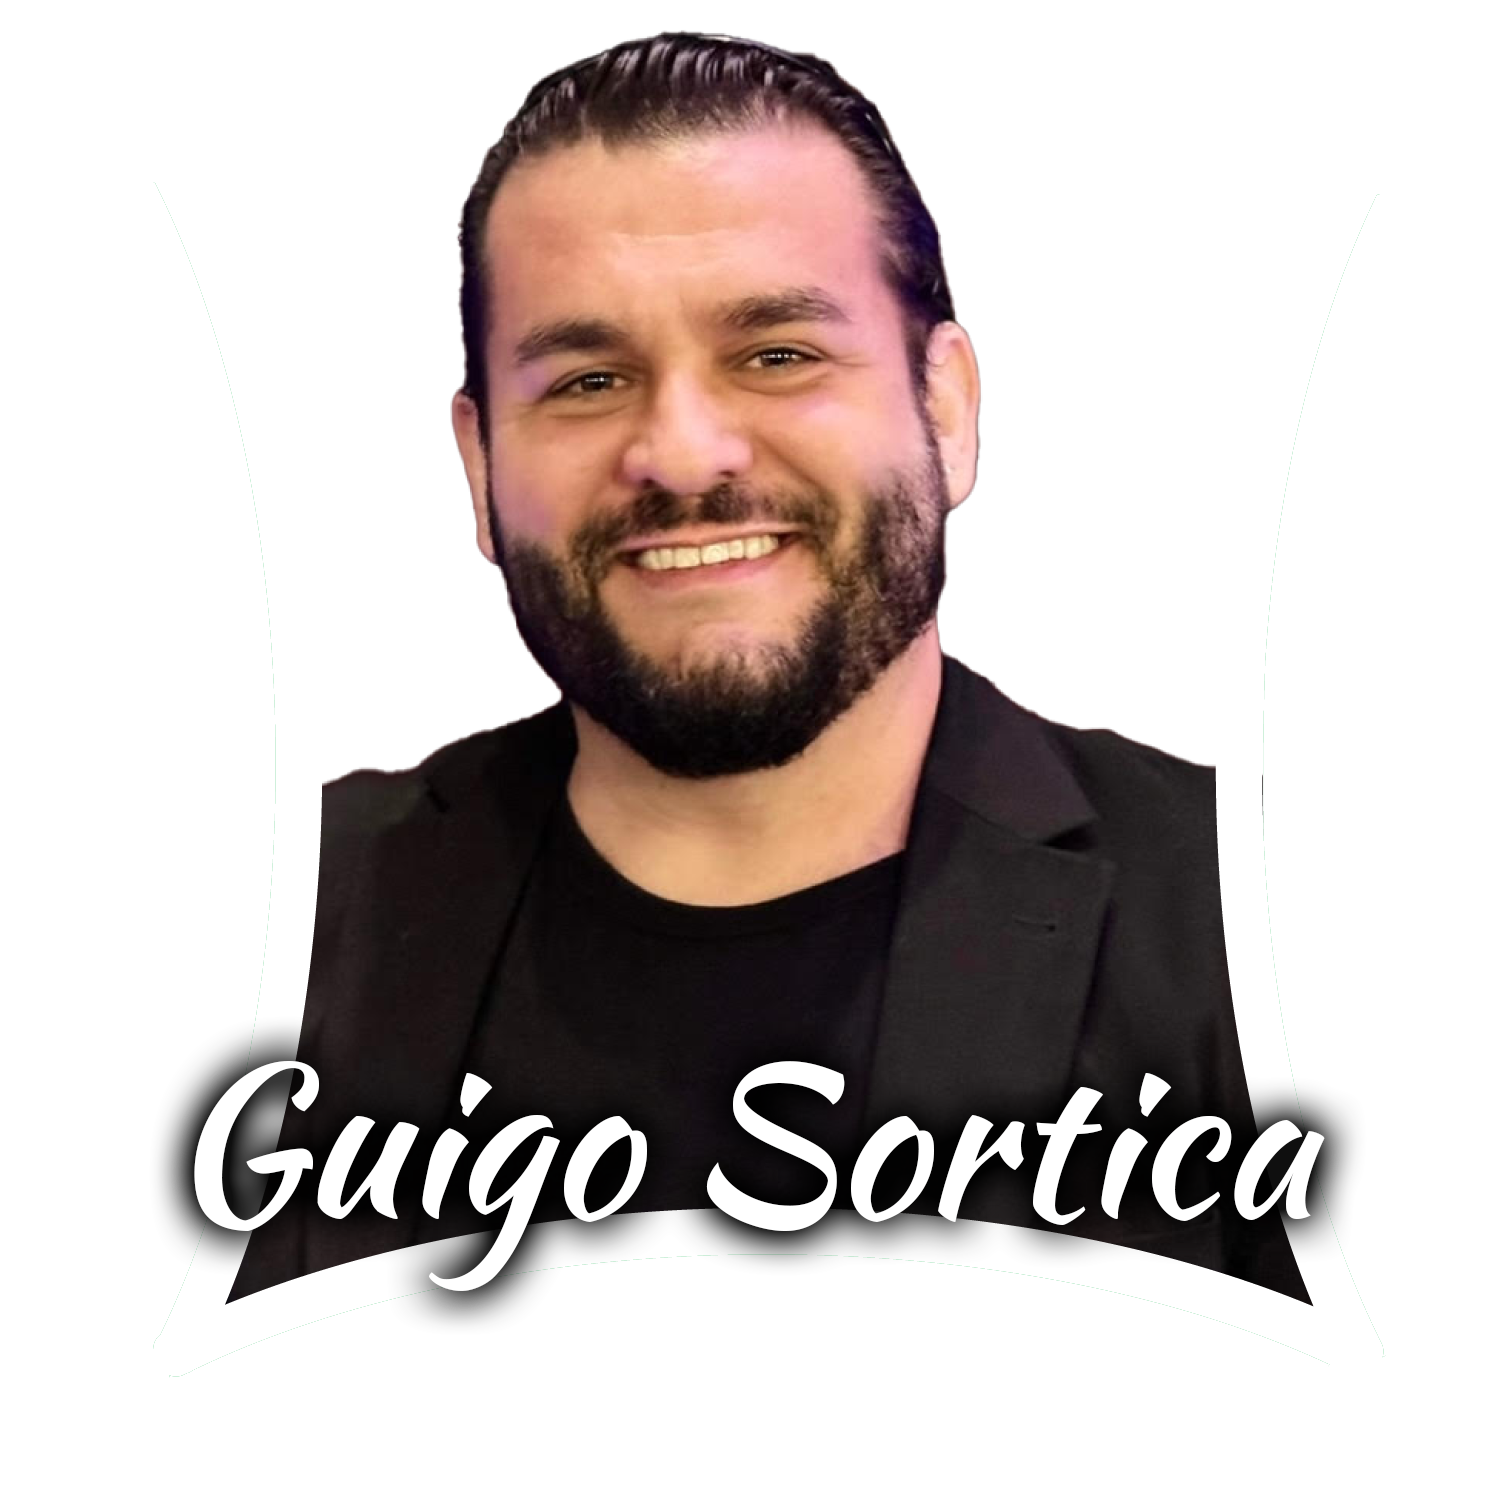 Guigo_name